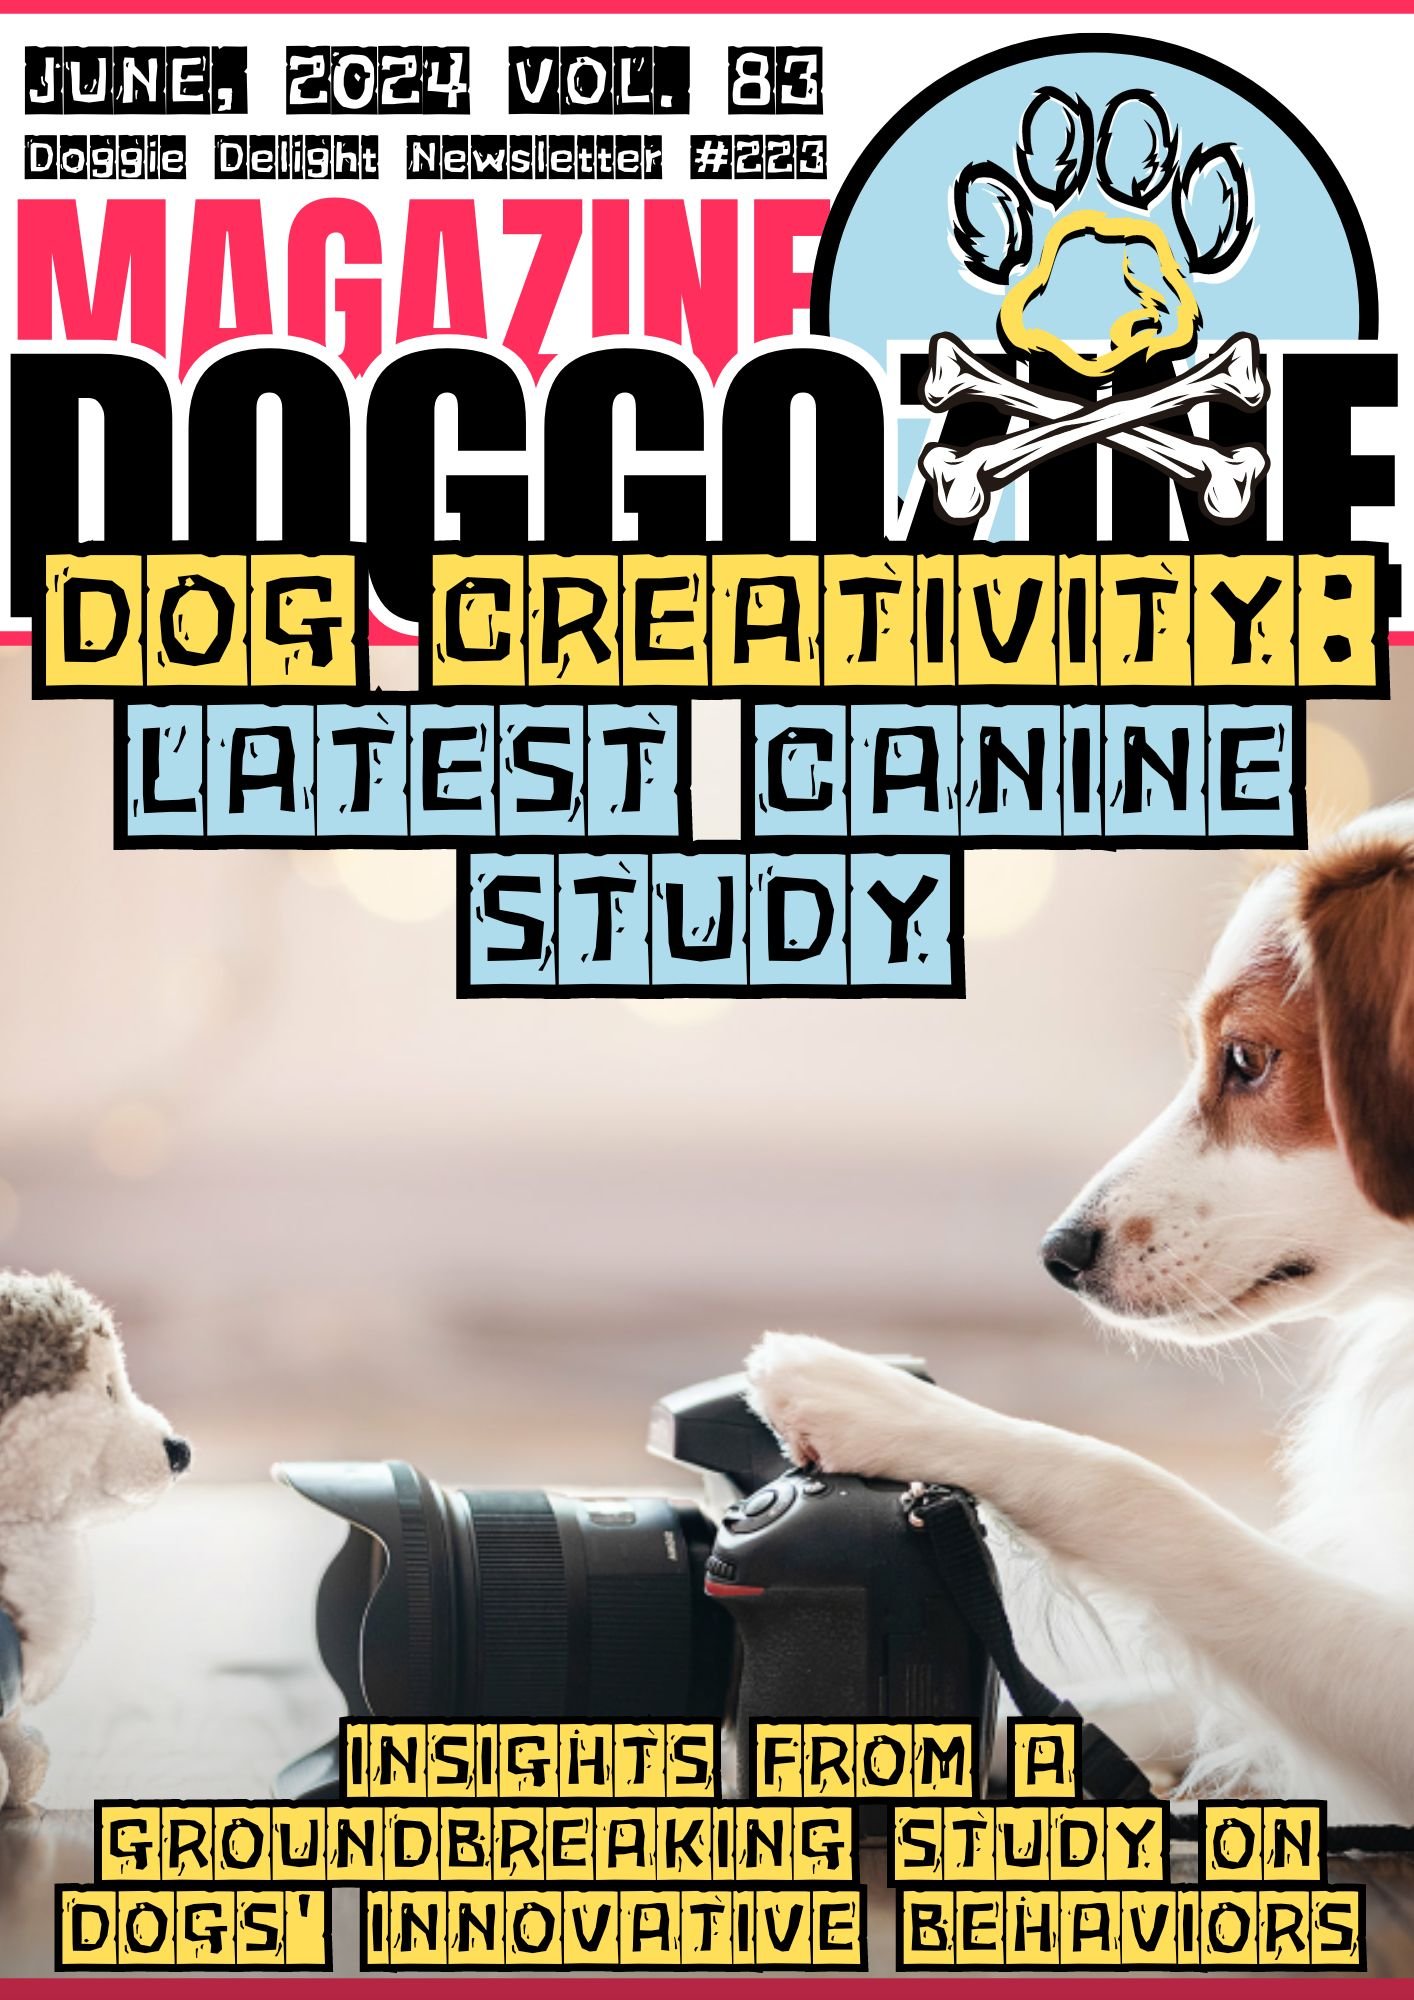 DOG CREATIVITY